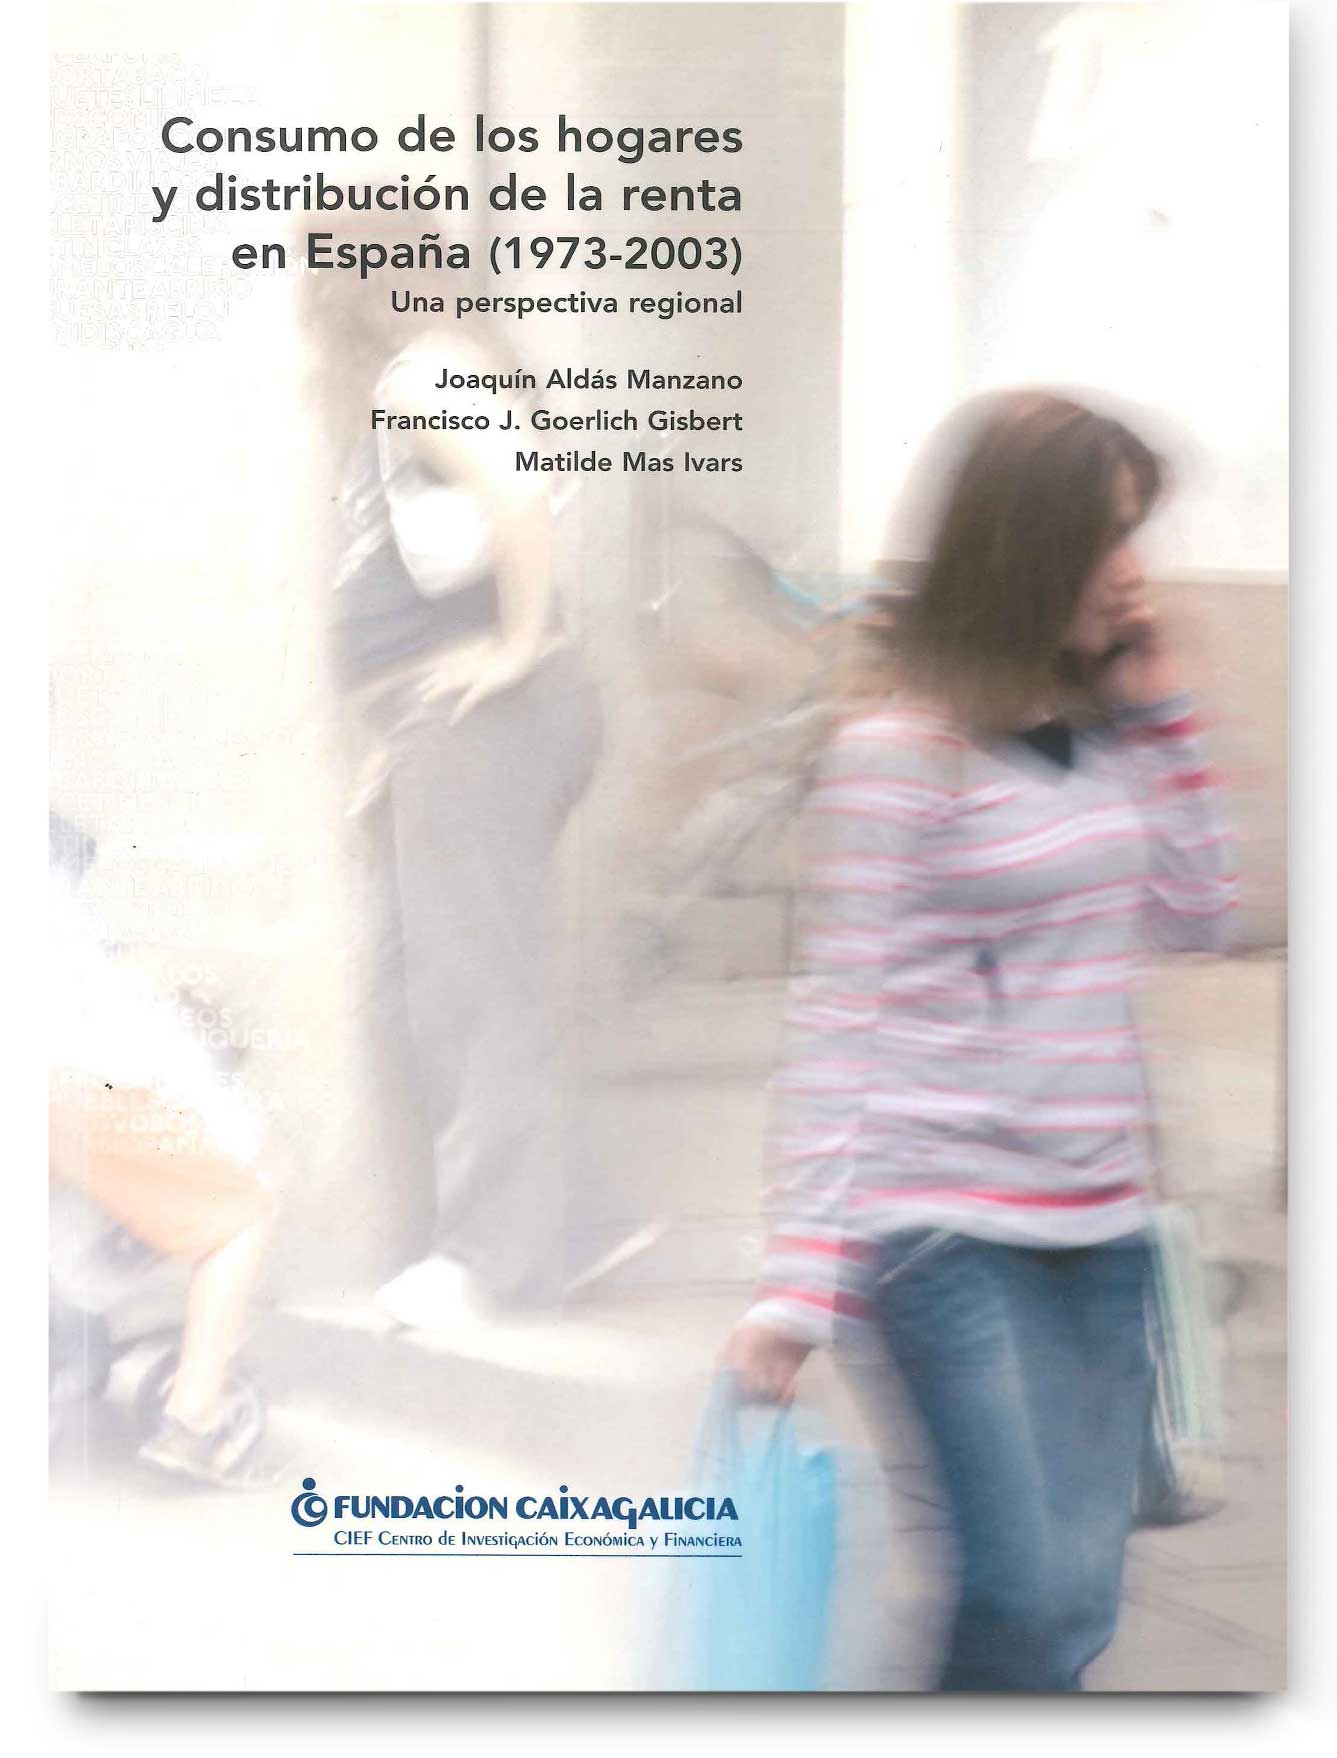 Consumo de los hogares y distribución de la renta en España (1973-2003). Una perspectiva regional